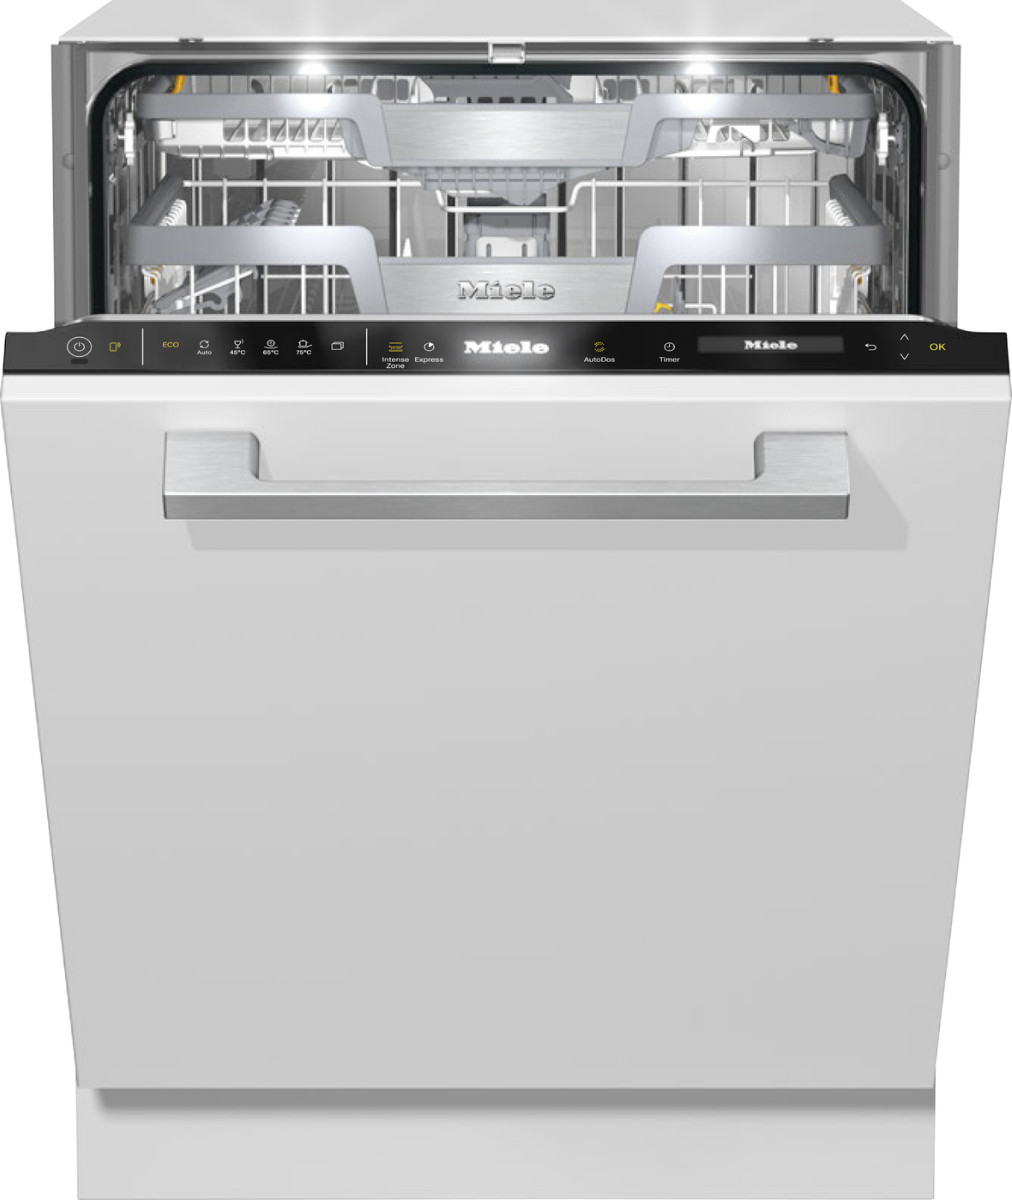 Новая посудомоечная машина  Miele G7560scvi, полная встройка, производство Германия,  ГАРАНТИЯ 1 ГОД, фото 1